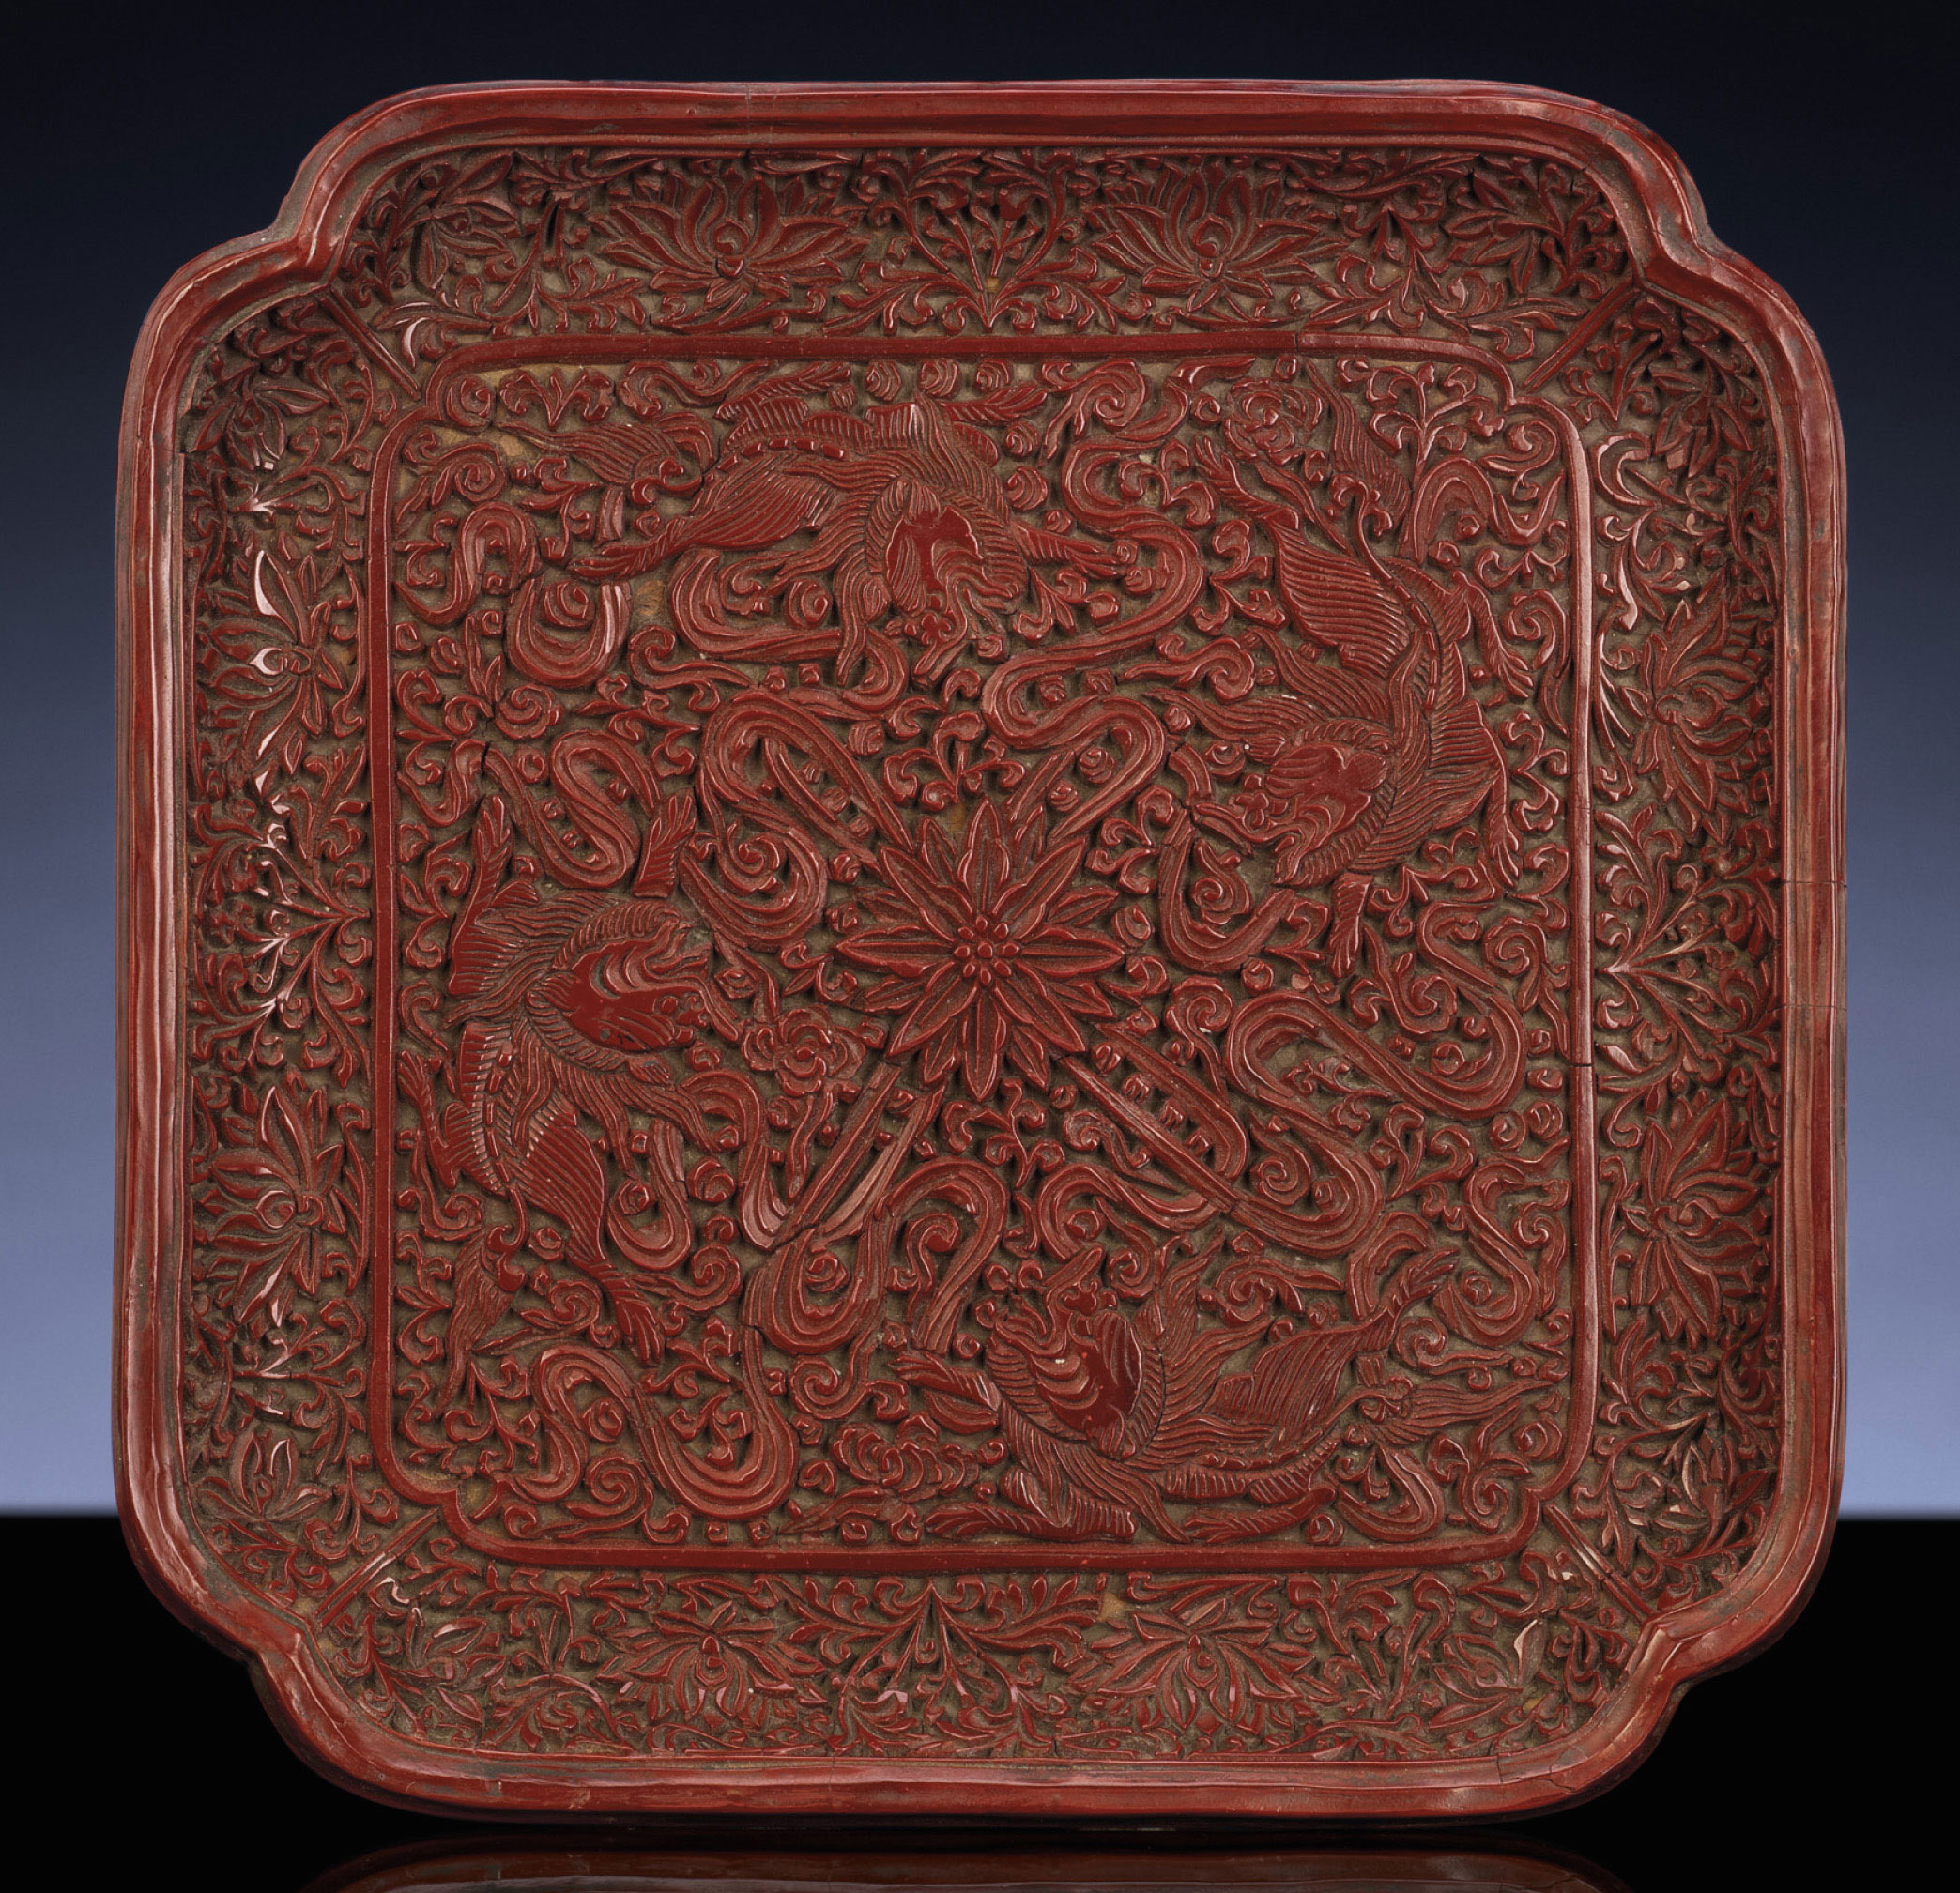 拍品3079明十六世紀 剔紅瑞獸紋倭角方盤